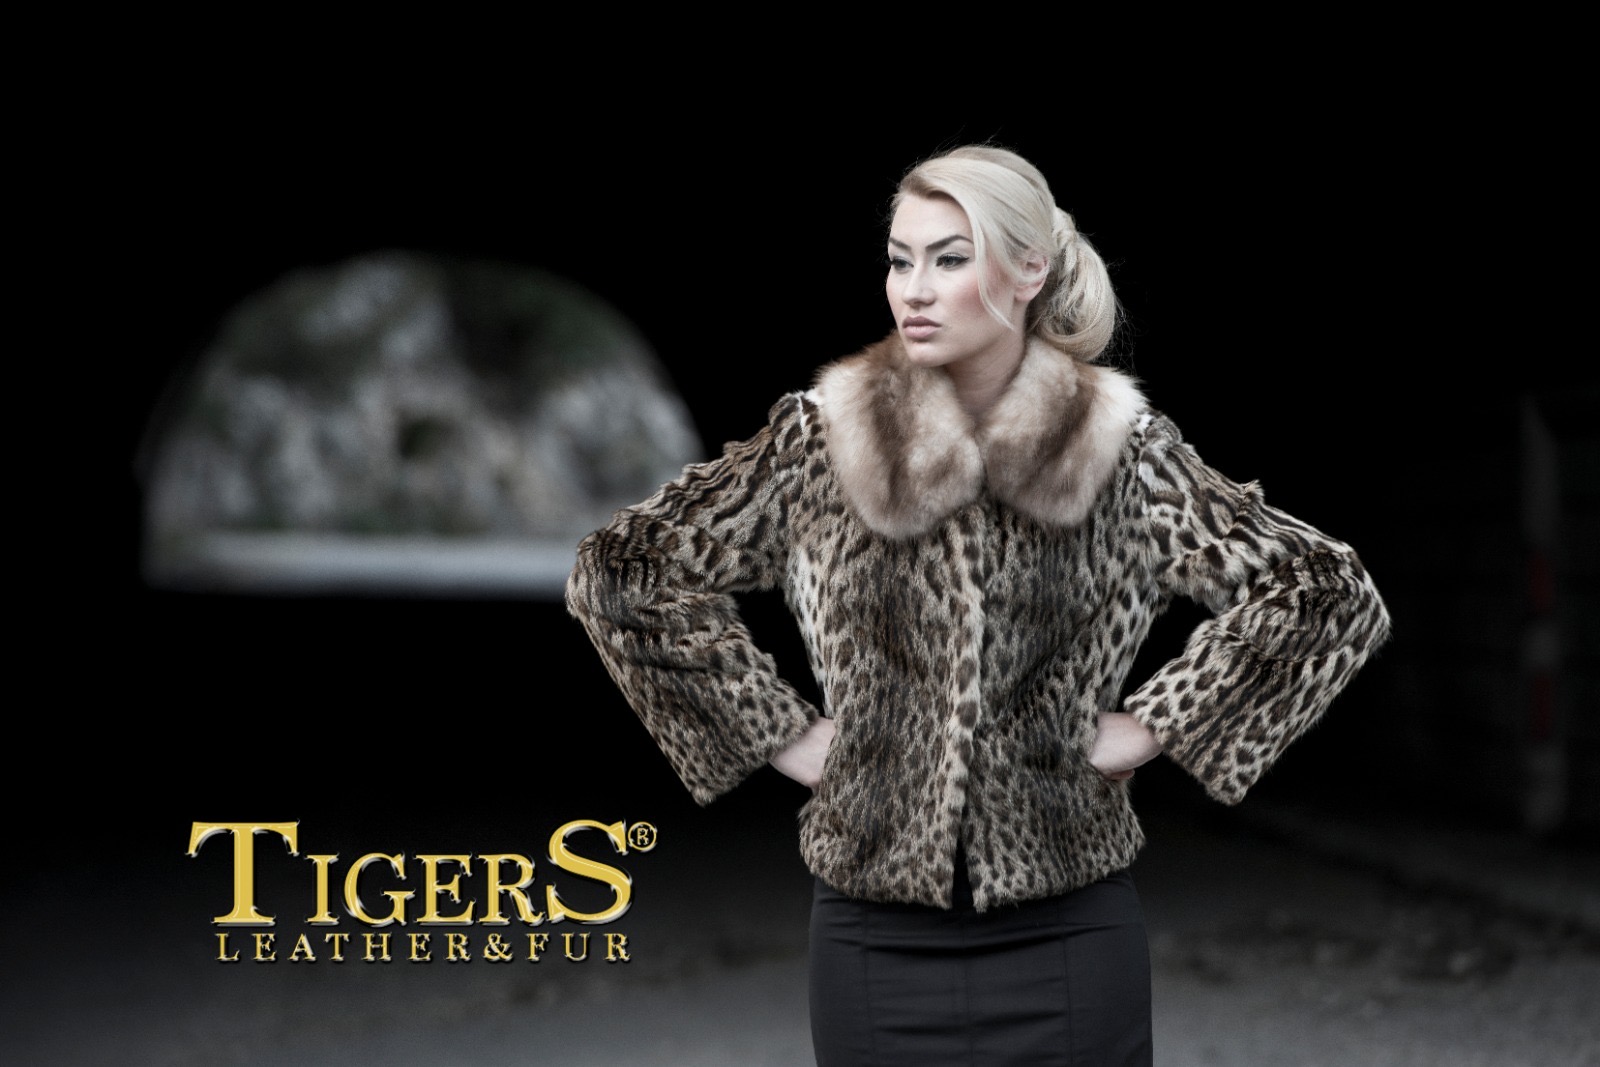 Tiger LEATHER (Mink fur coats)